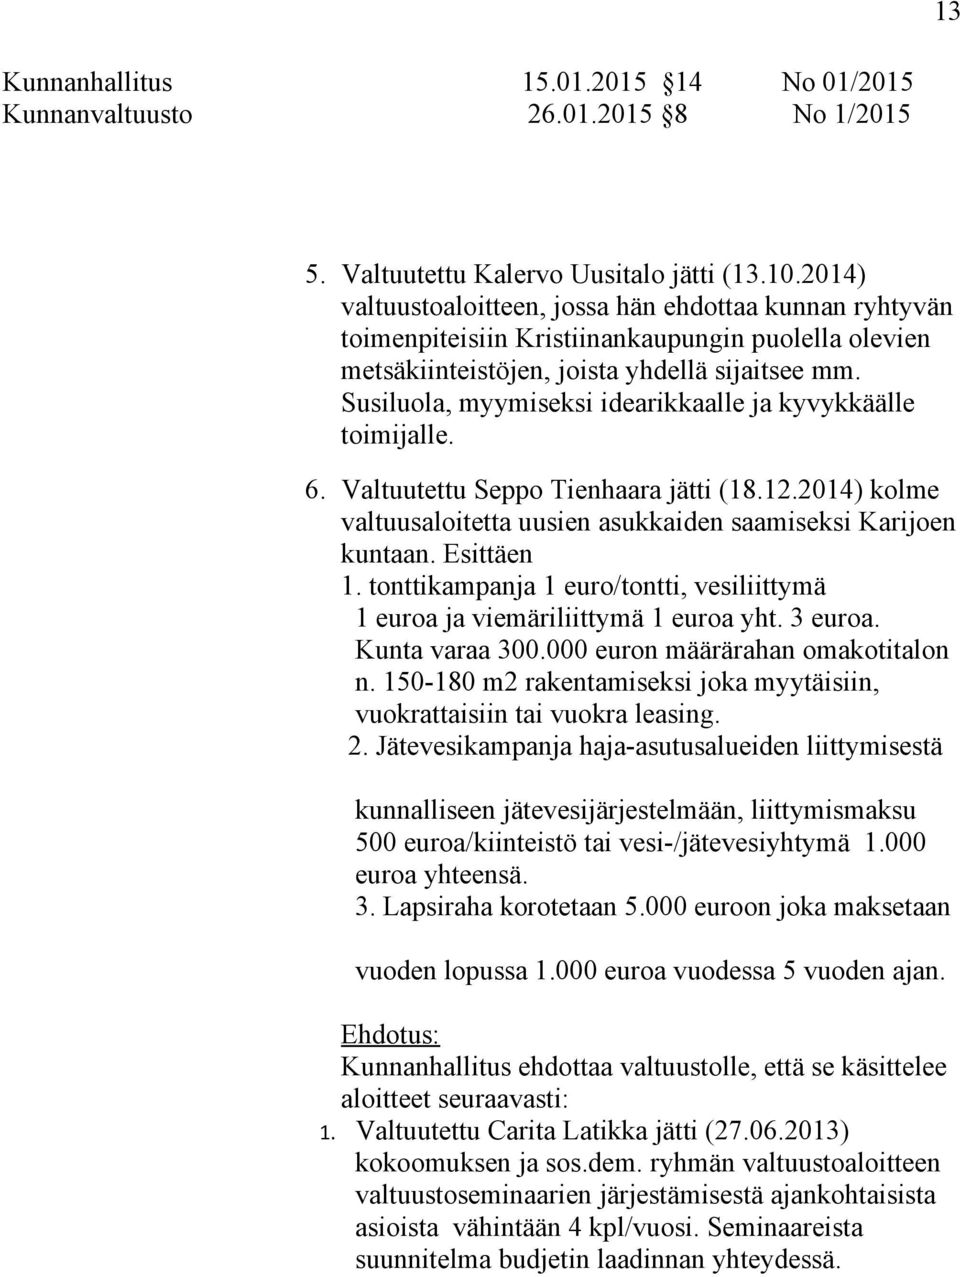 Susiluola, myymiseksi idearikkaalle ja kyvykkäälle toimijalle. 6. Valtuutettu Seppo Tienhaara jätti (18.12.2014) kolme valtuusaloitetta uusien asukkaiden saamiseksi Karijoen kuntaan. Esittäen 1.